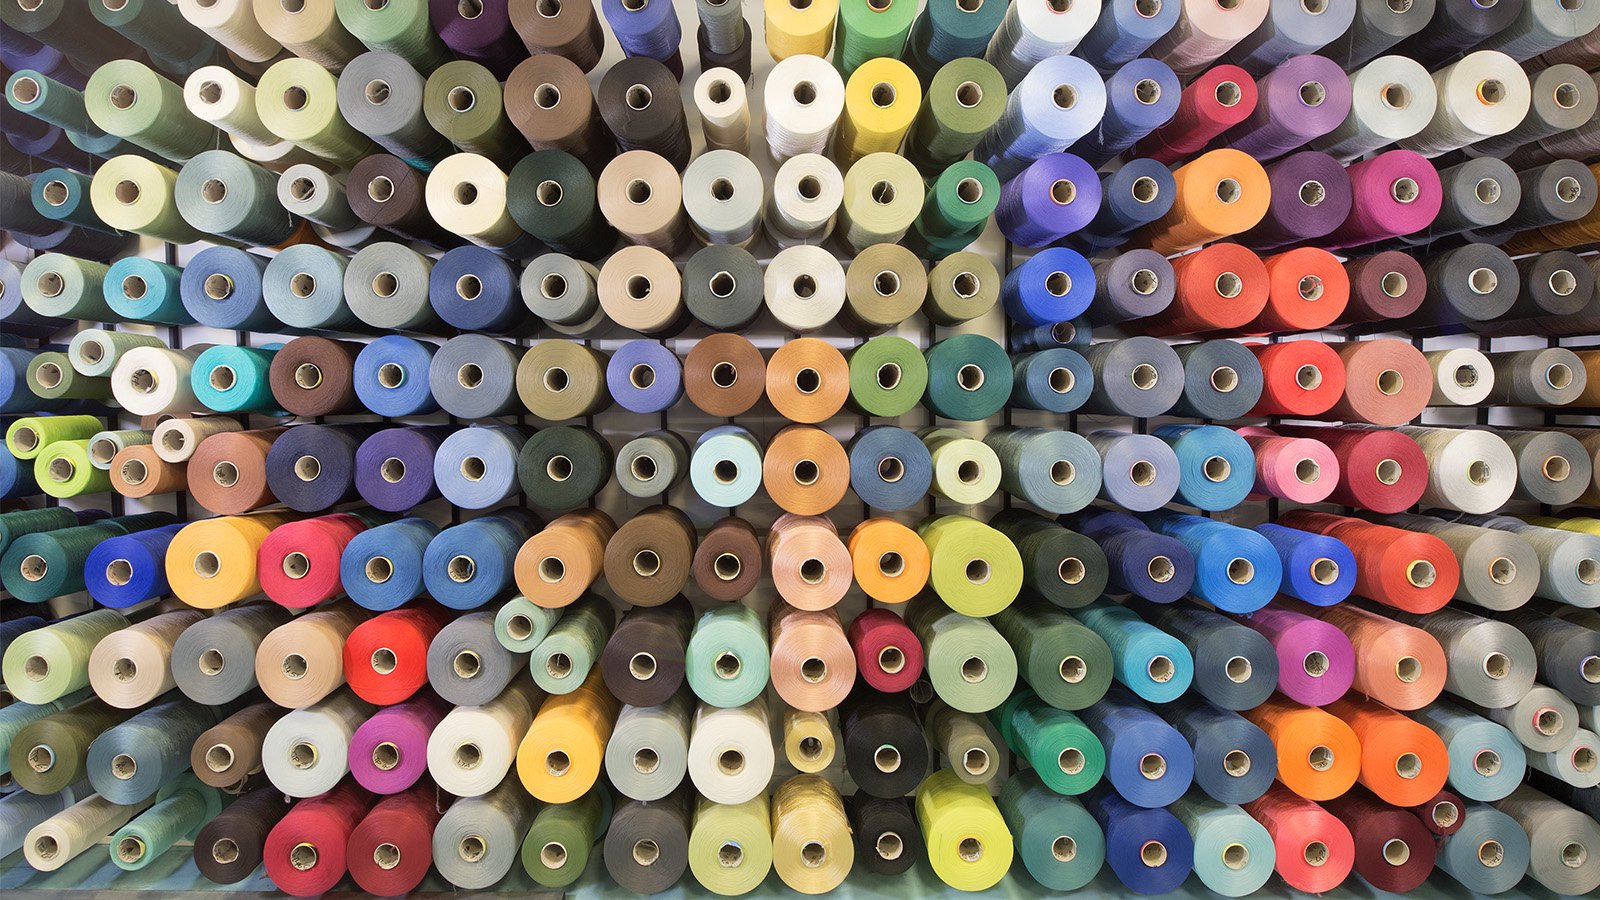 Aquafil's 2020 Eco Textiles